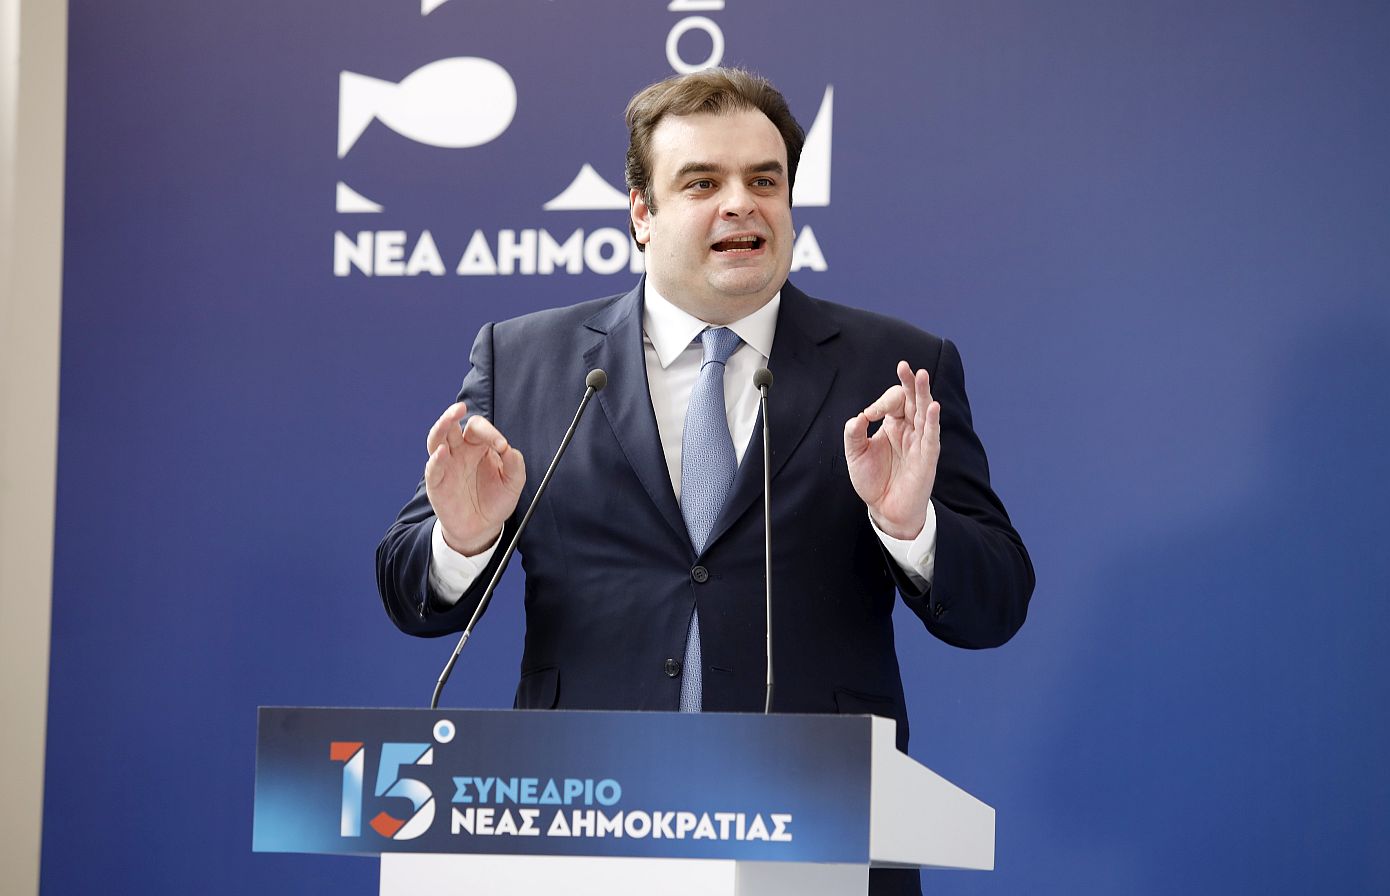 Πιερρακάκης: Δεν υπάρχει χαλαρή ψήφος, υπάρχει μόνο συνειδητή ψήφος και το μήνυμα ότι η Ελλάδα δεν μπορεί να περιμένει